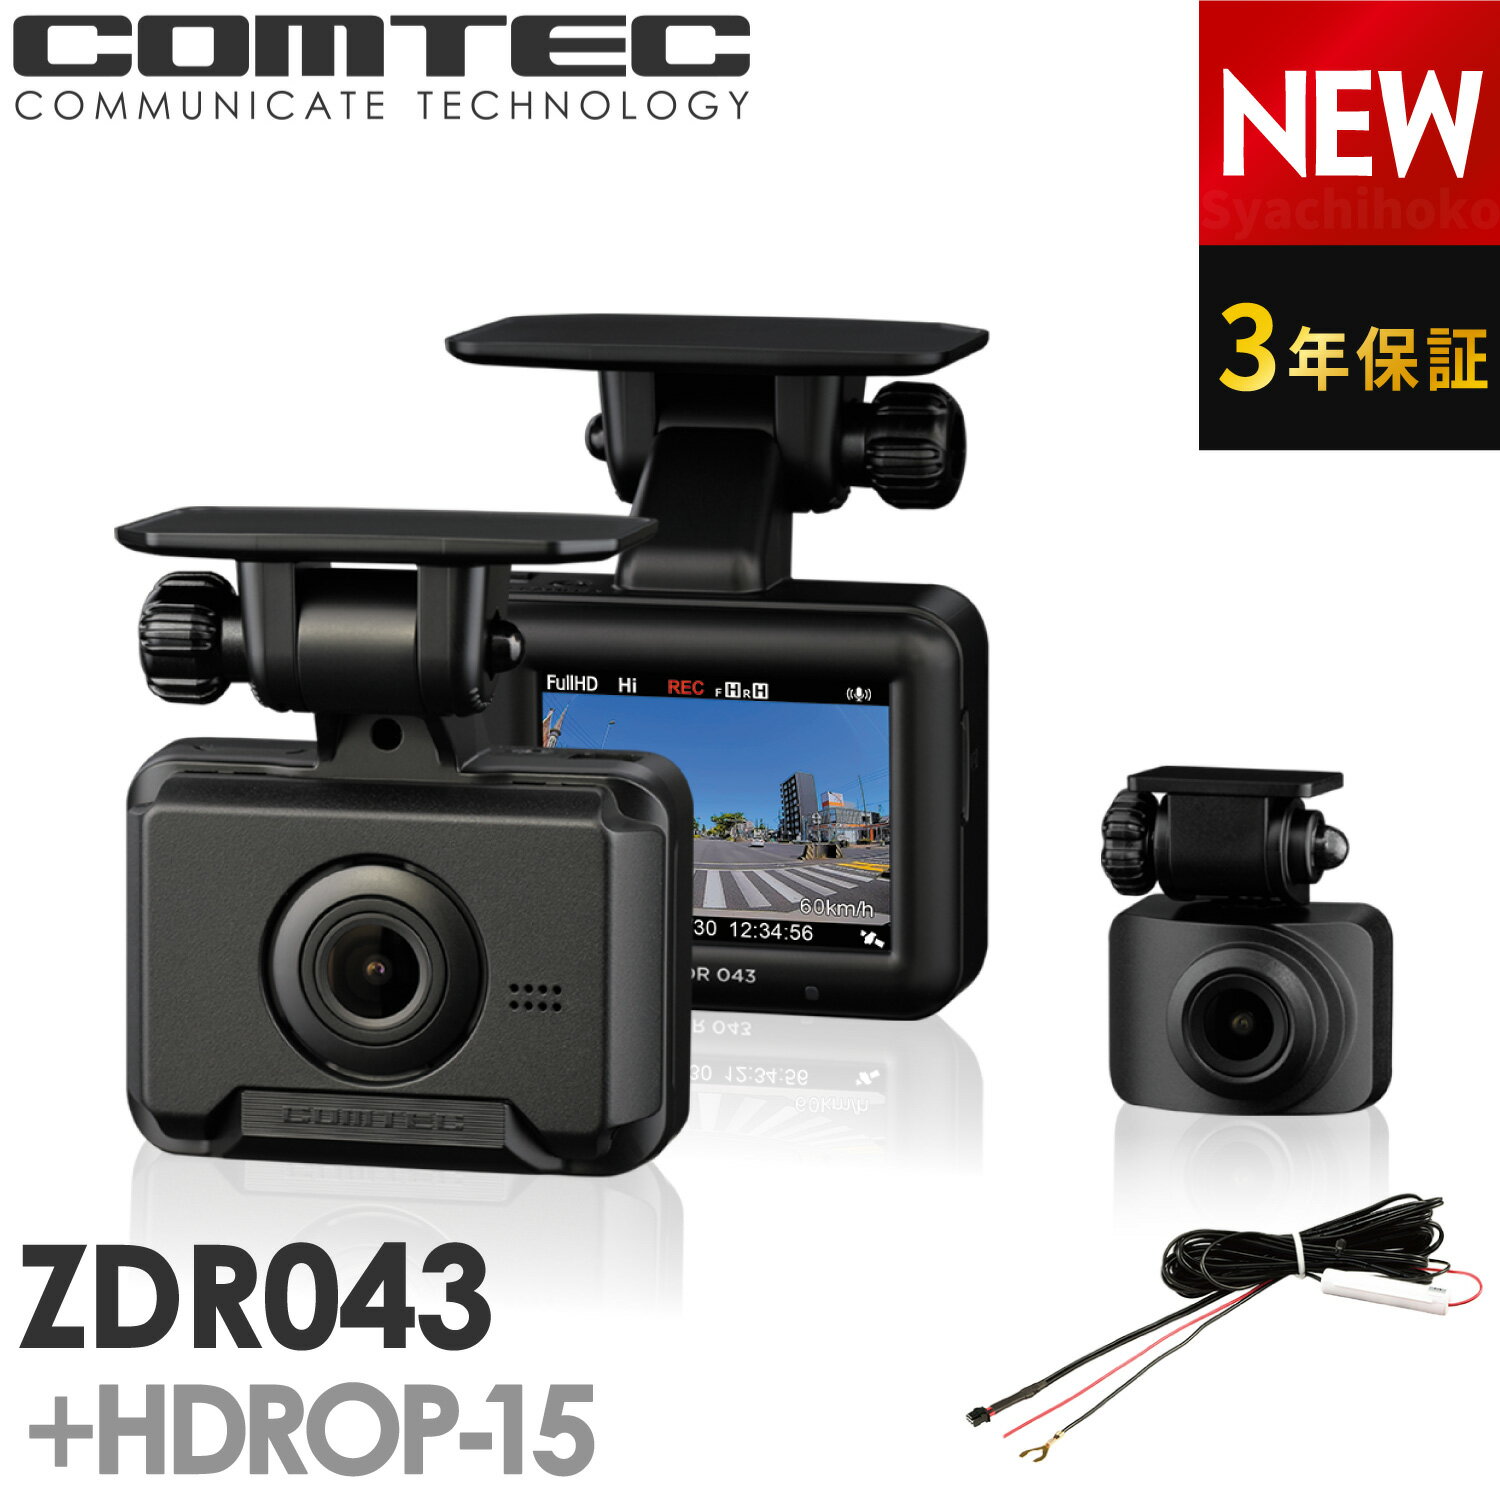 新商品 ドライブレコーダー 前後2カメラ コムテック ZDR043+HDROP-15 直接配線コードセット 3年保証 ノイズ対策済 フ…